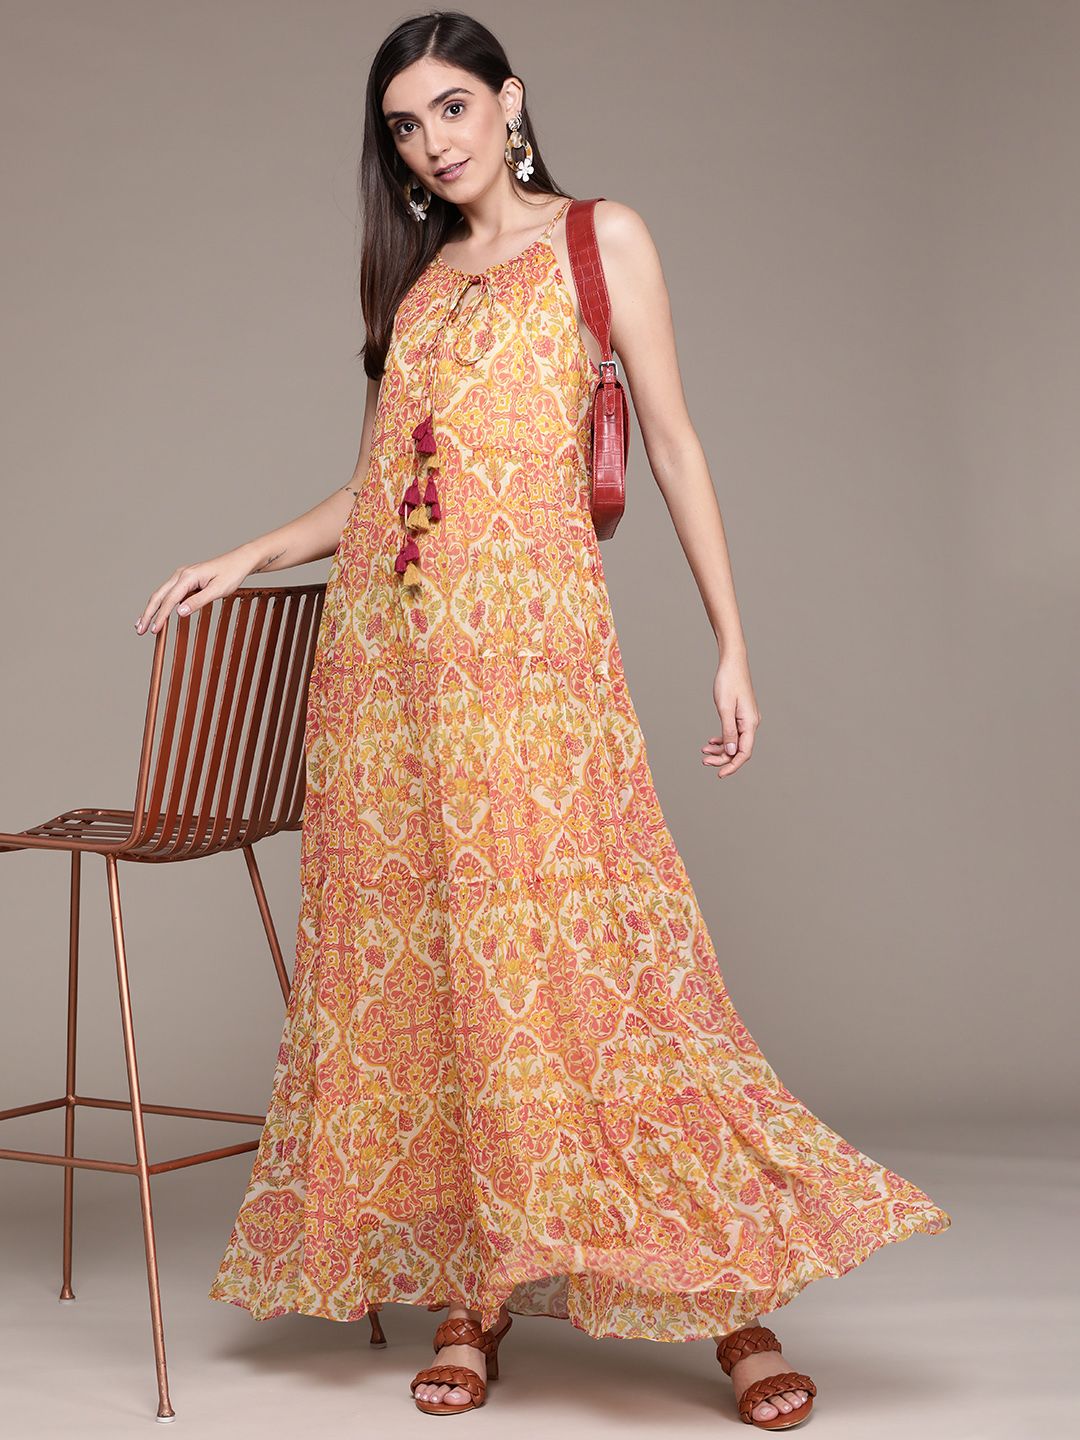 aarke Ritu Kumar Women Yellow & Pink Ethnic Motifs Printed Maxi Dress Price in India